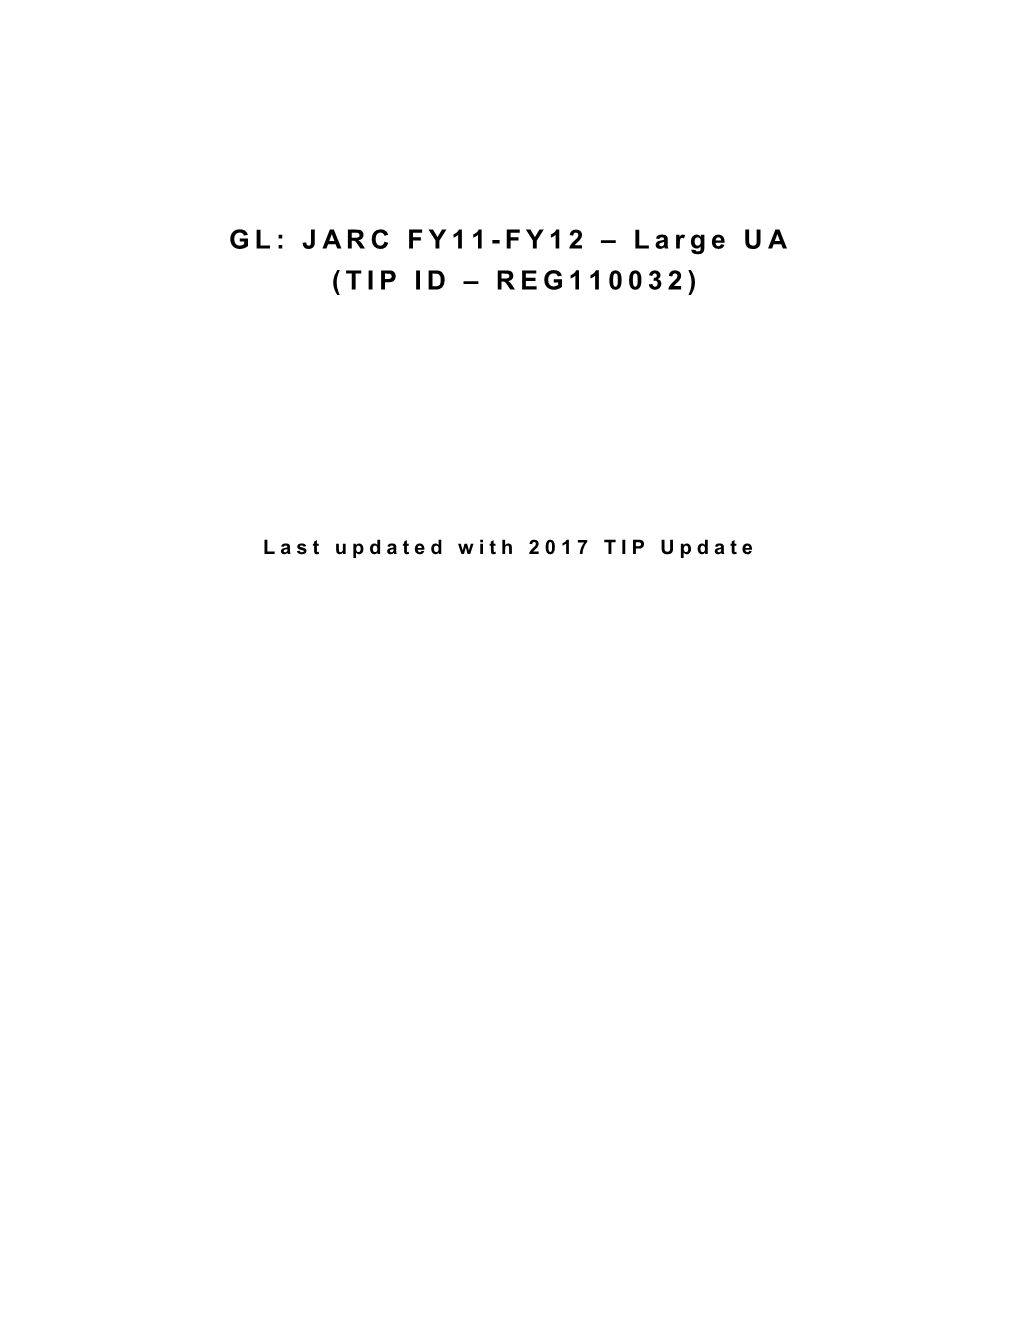 GL: JARC FY11-FY12 – Large UA (TIP ID – REG110032)